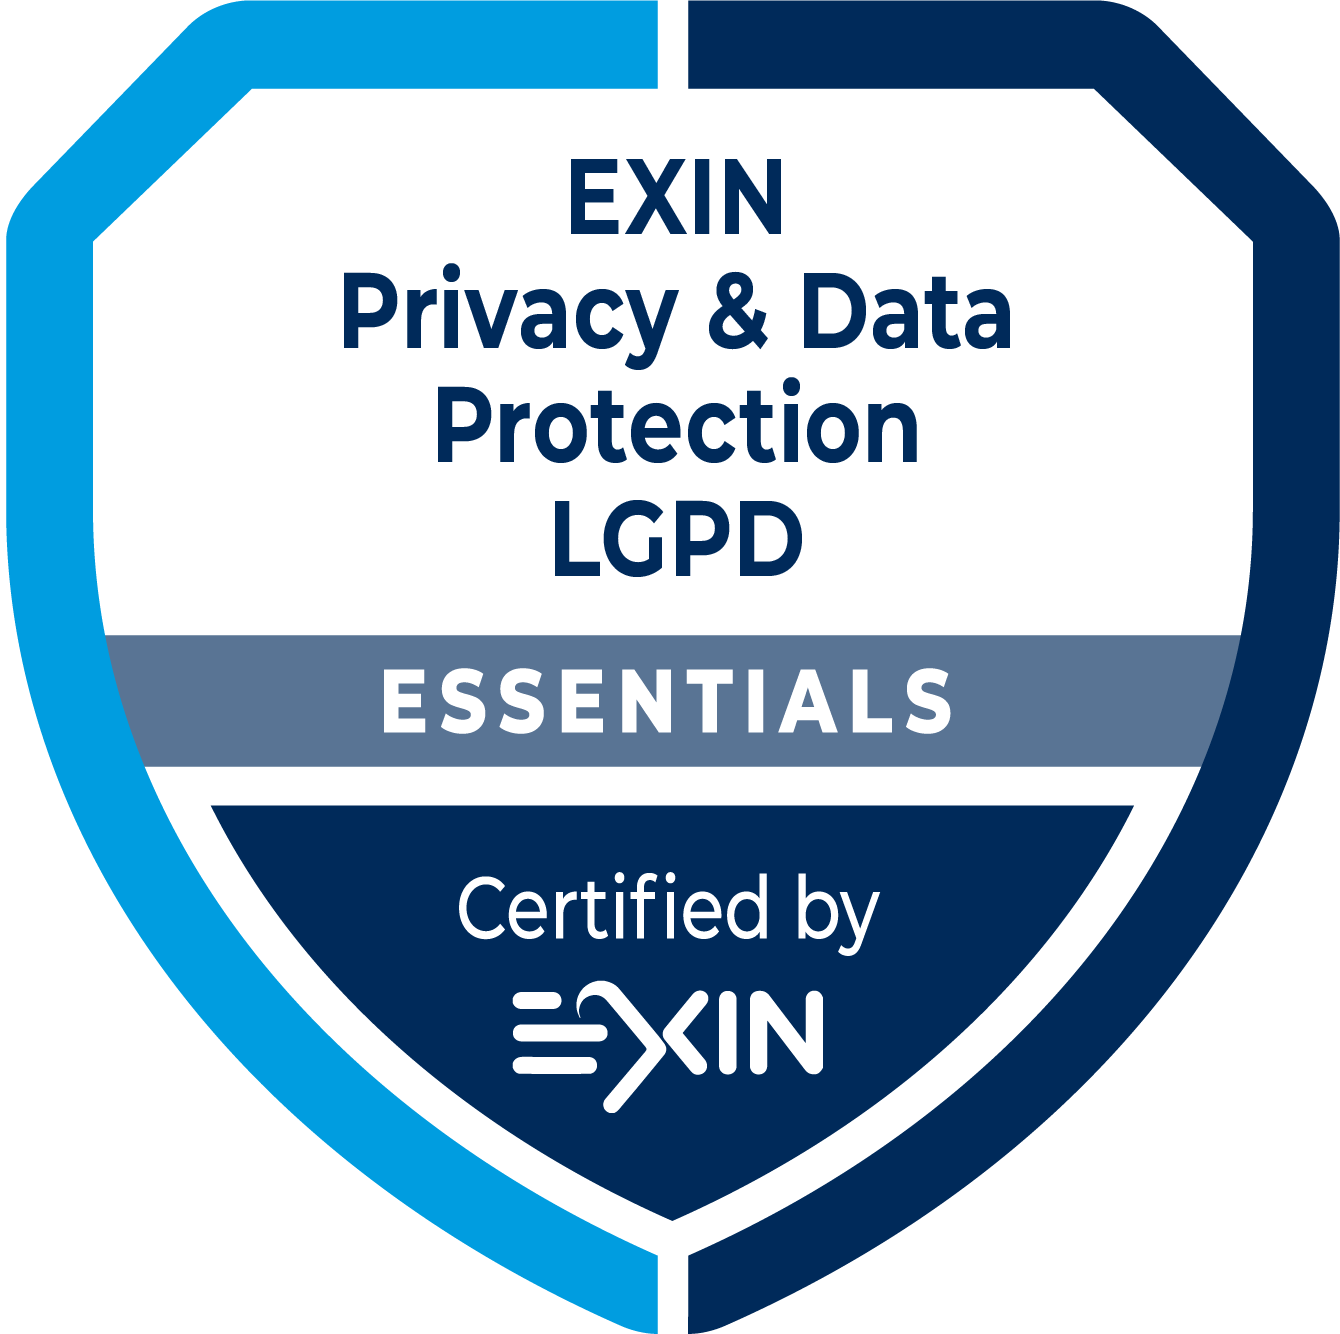 EXIN Privacy & Data Protection Essentials based on LGPD é uma certificação que valida o conhecimento de um profissional sobre a organização da proteção de dados pessoais, e as regras e regulamentos brasileiros em matéria de proteção de dados.